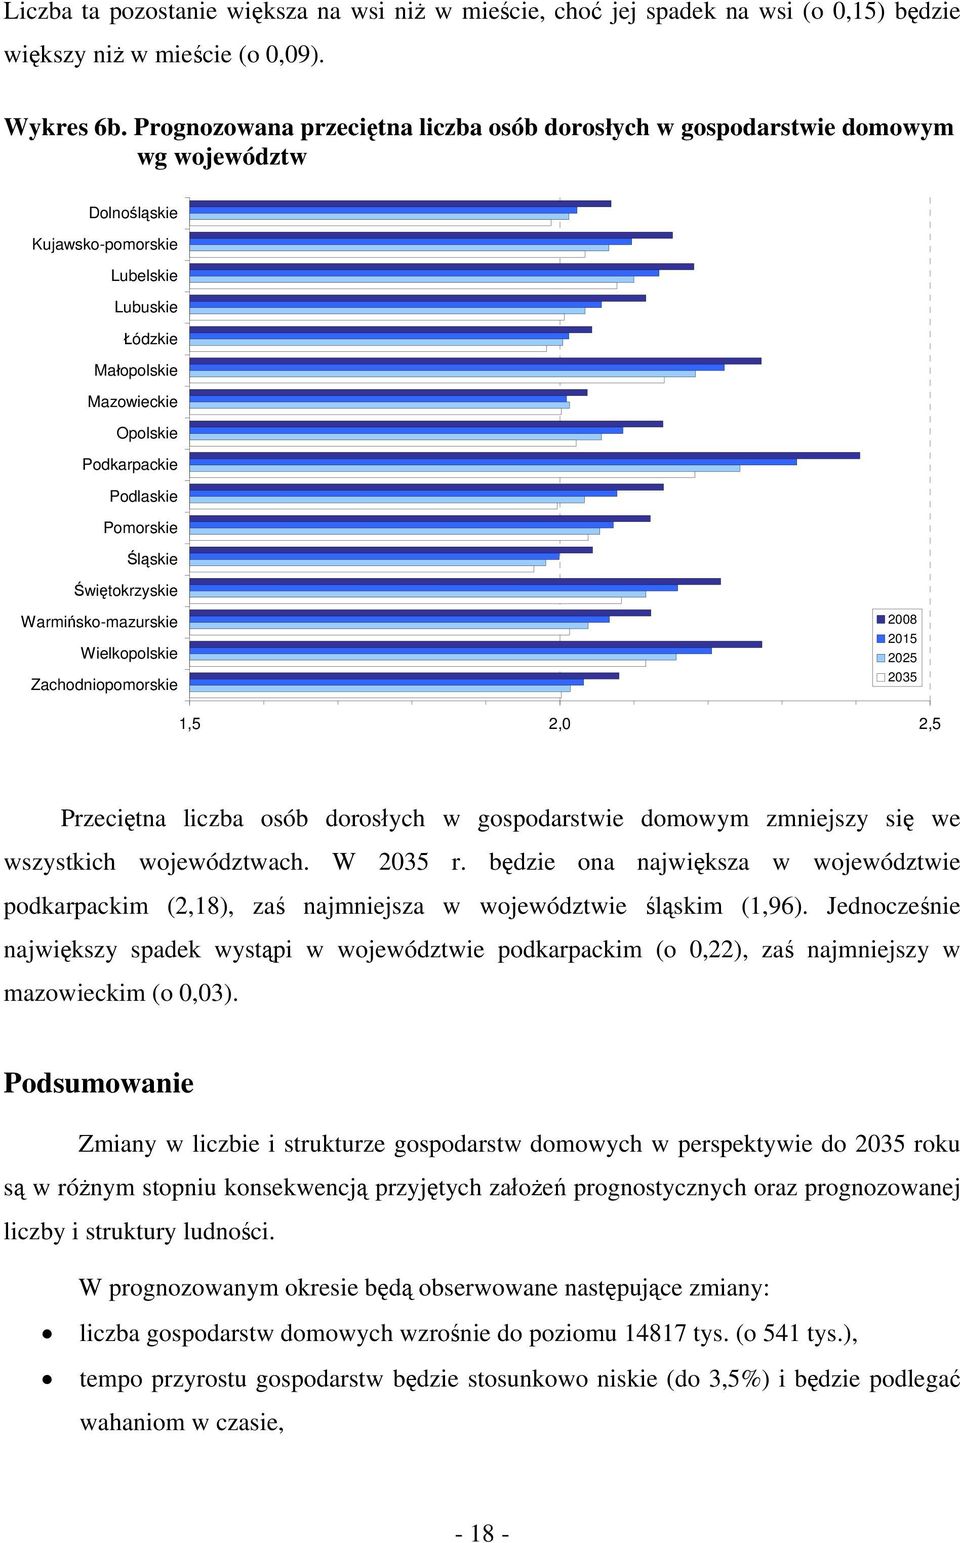 Pomorskie Śląskie Świętokrzyskie Warmińsko-mazurskie Wielkopolskie Zachodniopomorskie 2015 2025 1,5 2,0 2,5 Przeciętna liczba osób dorosłych w gospodarstwie domowym zmniejszy się we wszystkich